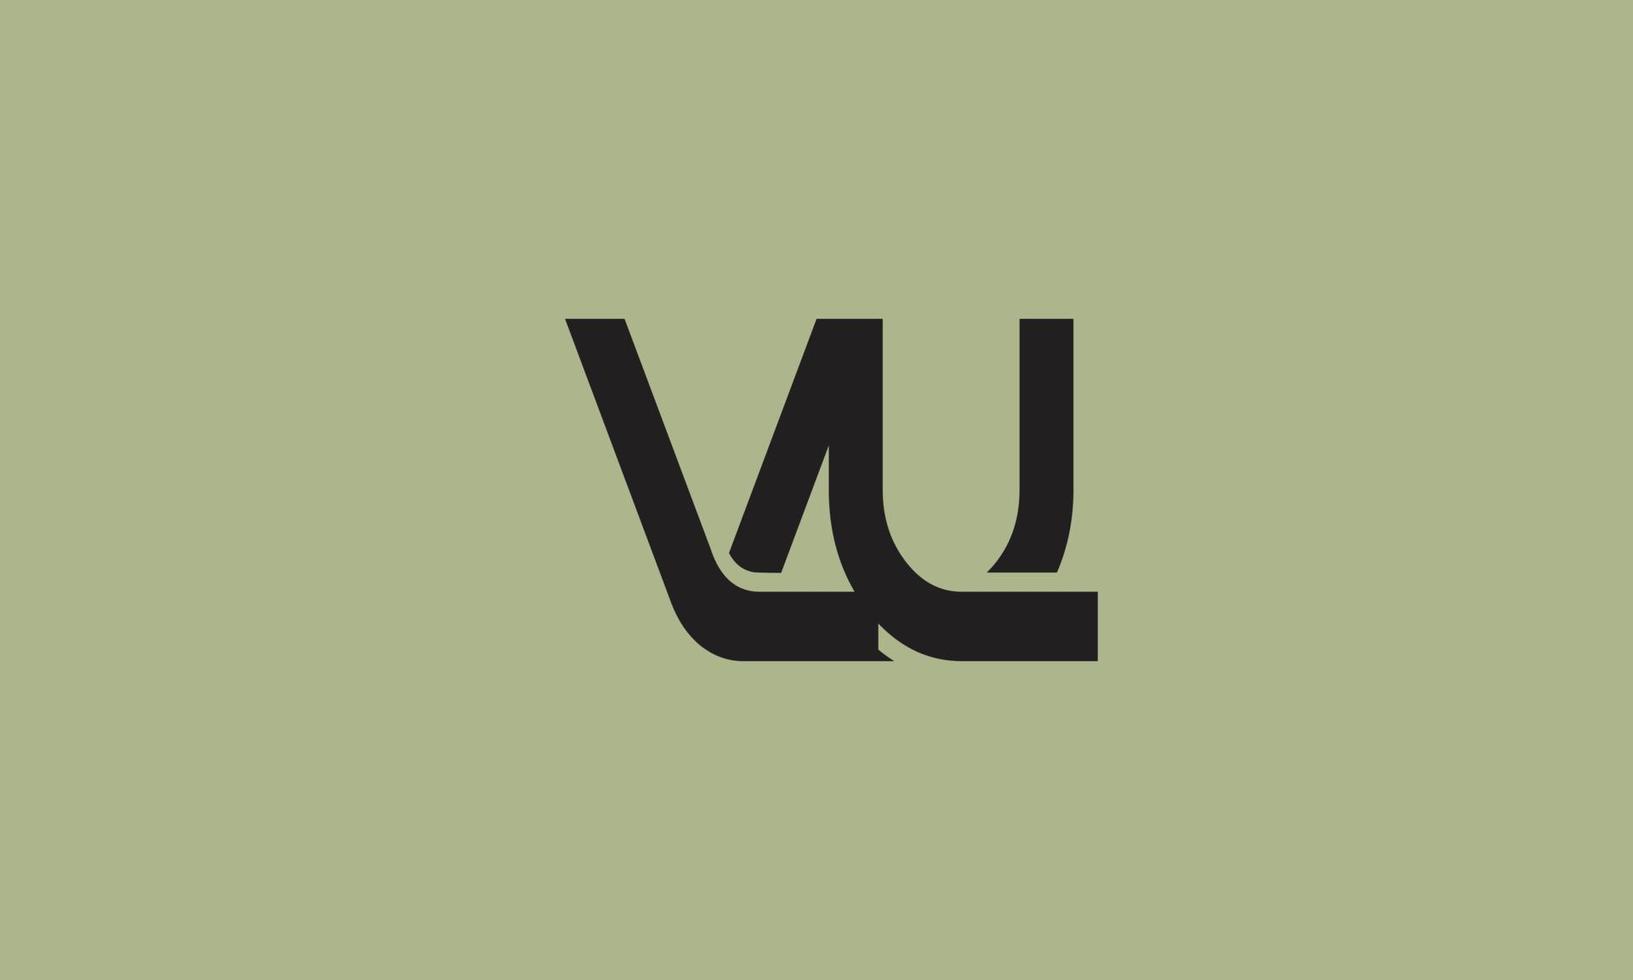 letras do alfabeto iniciais monograma logotipo vu, uv, v e u vetor